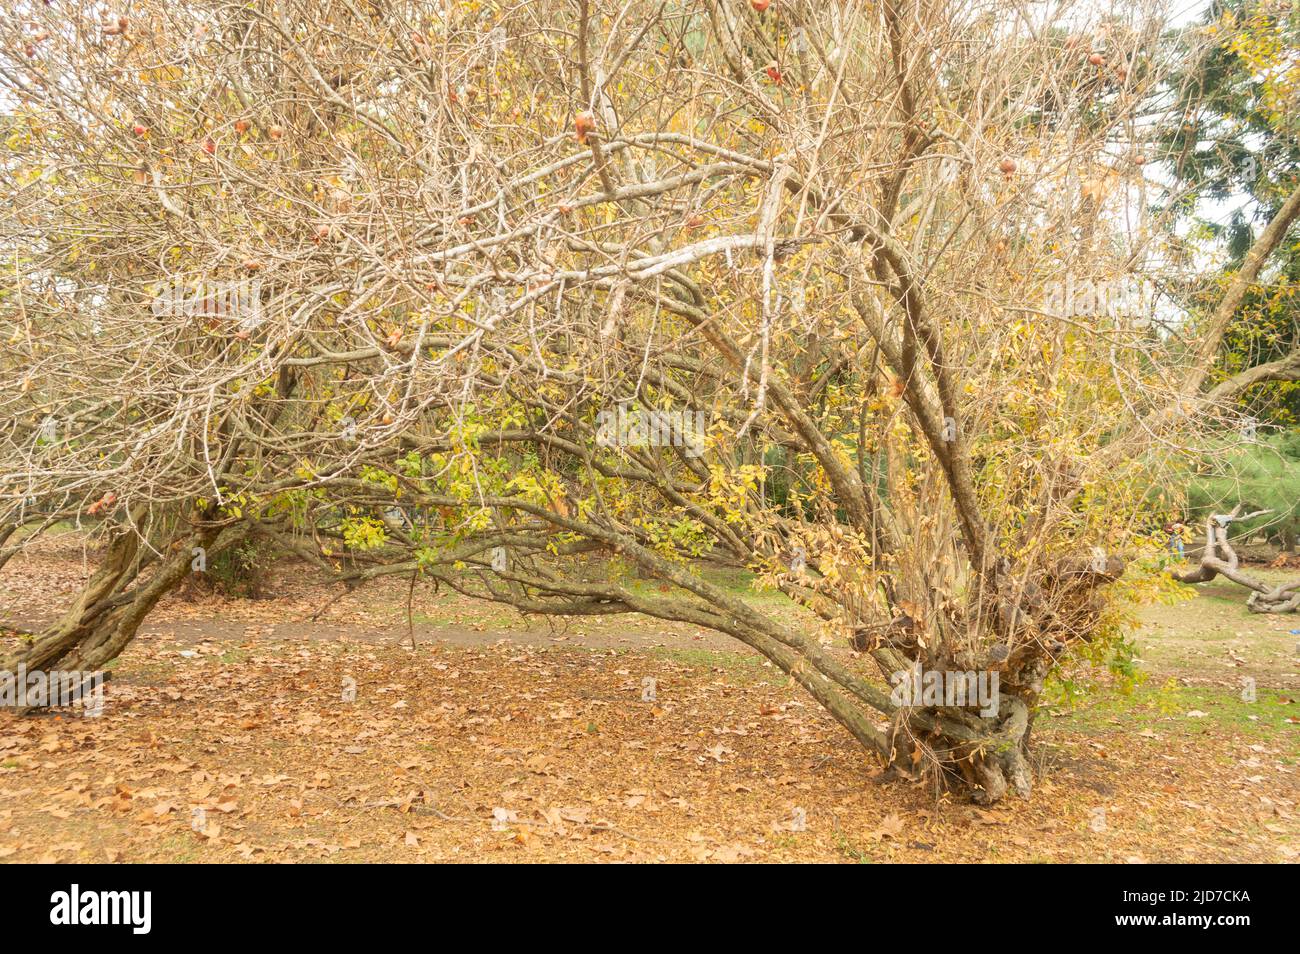 park tree in autumn Stock Photo